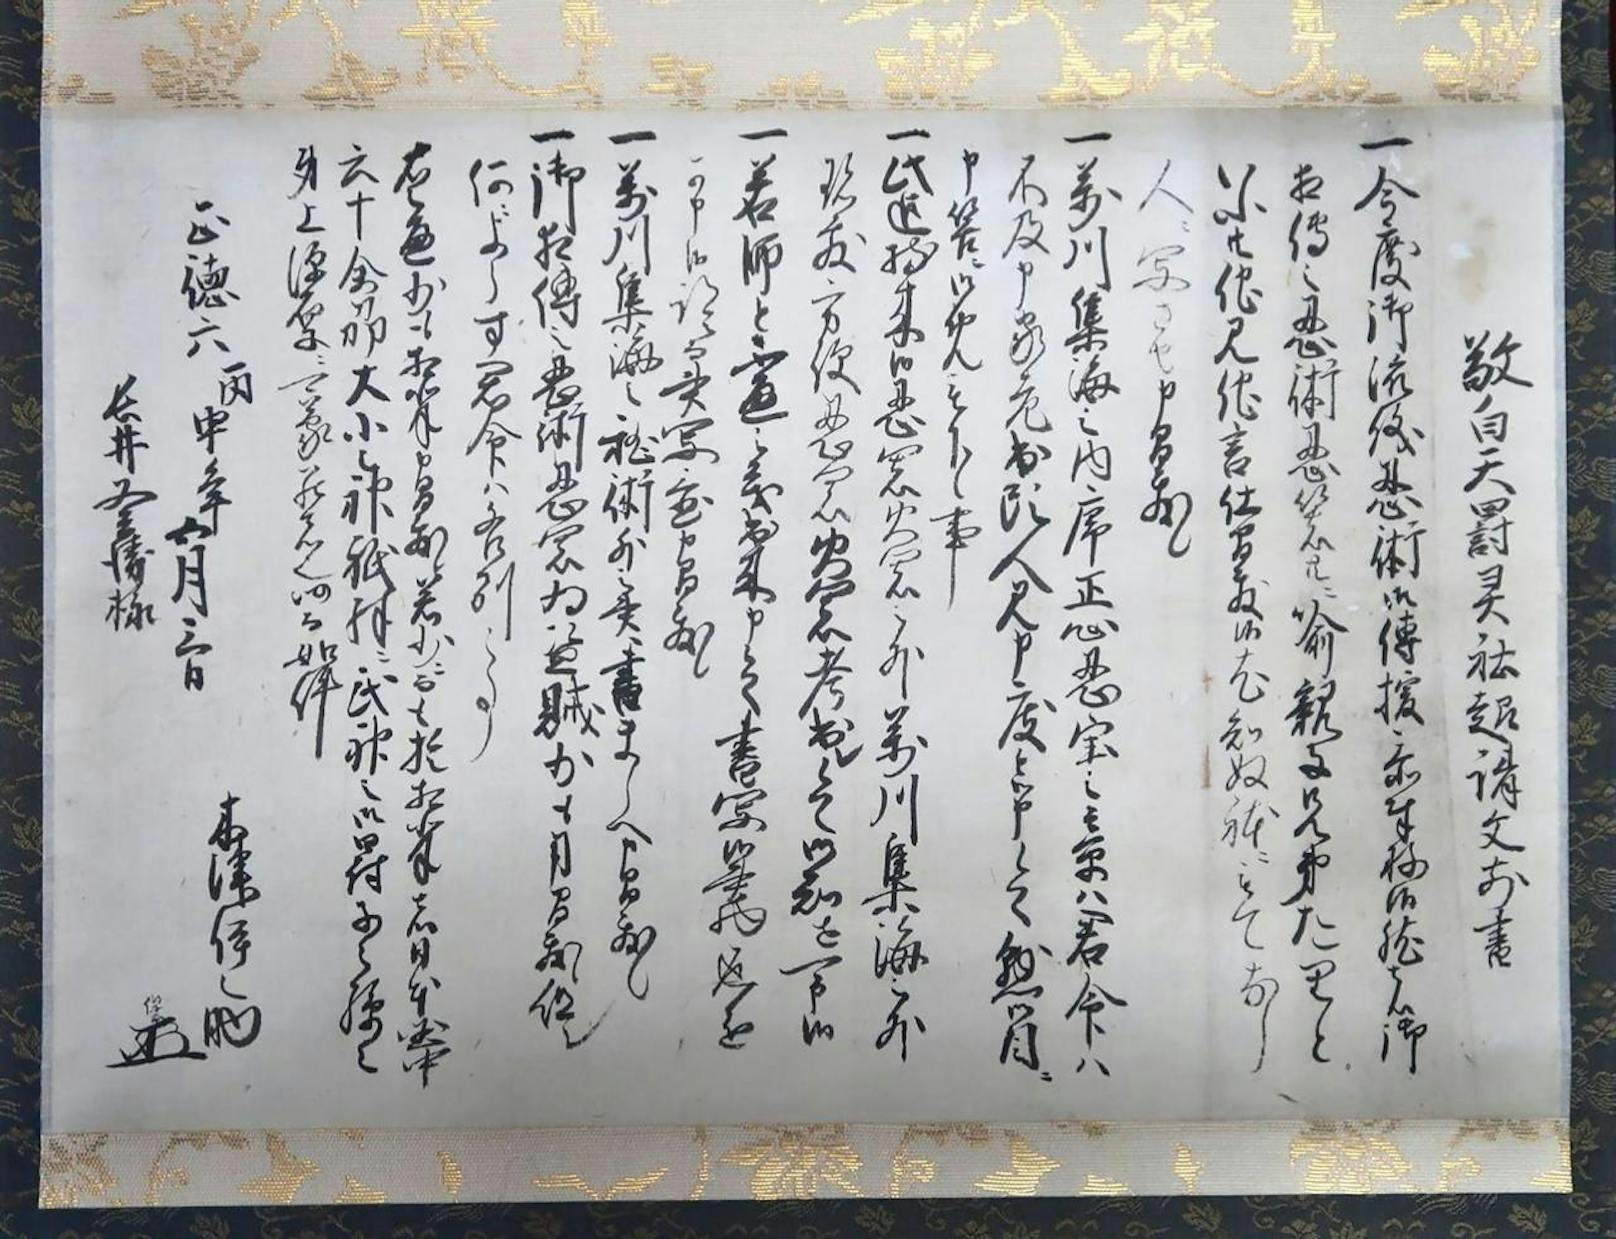 Japanische Forscher haben einen jahrhundertealten Ninja-Eid entdeckt: Das Dokument umfasst sechs Versprechen, die vor rund 300 Jahren von einem Ninja namens Insouke Kizu unterzeichnet wurden.